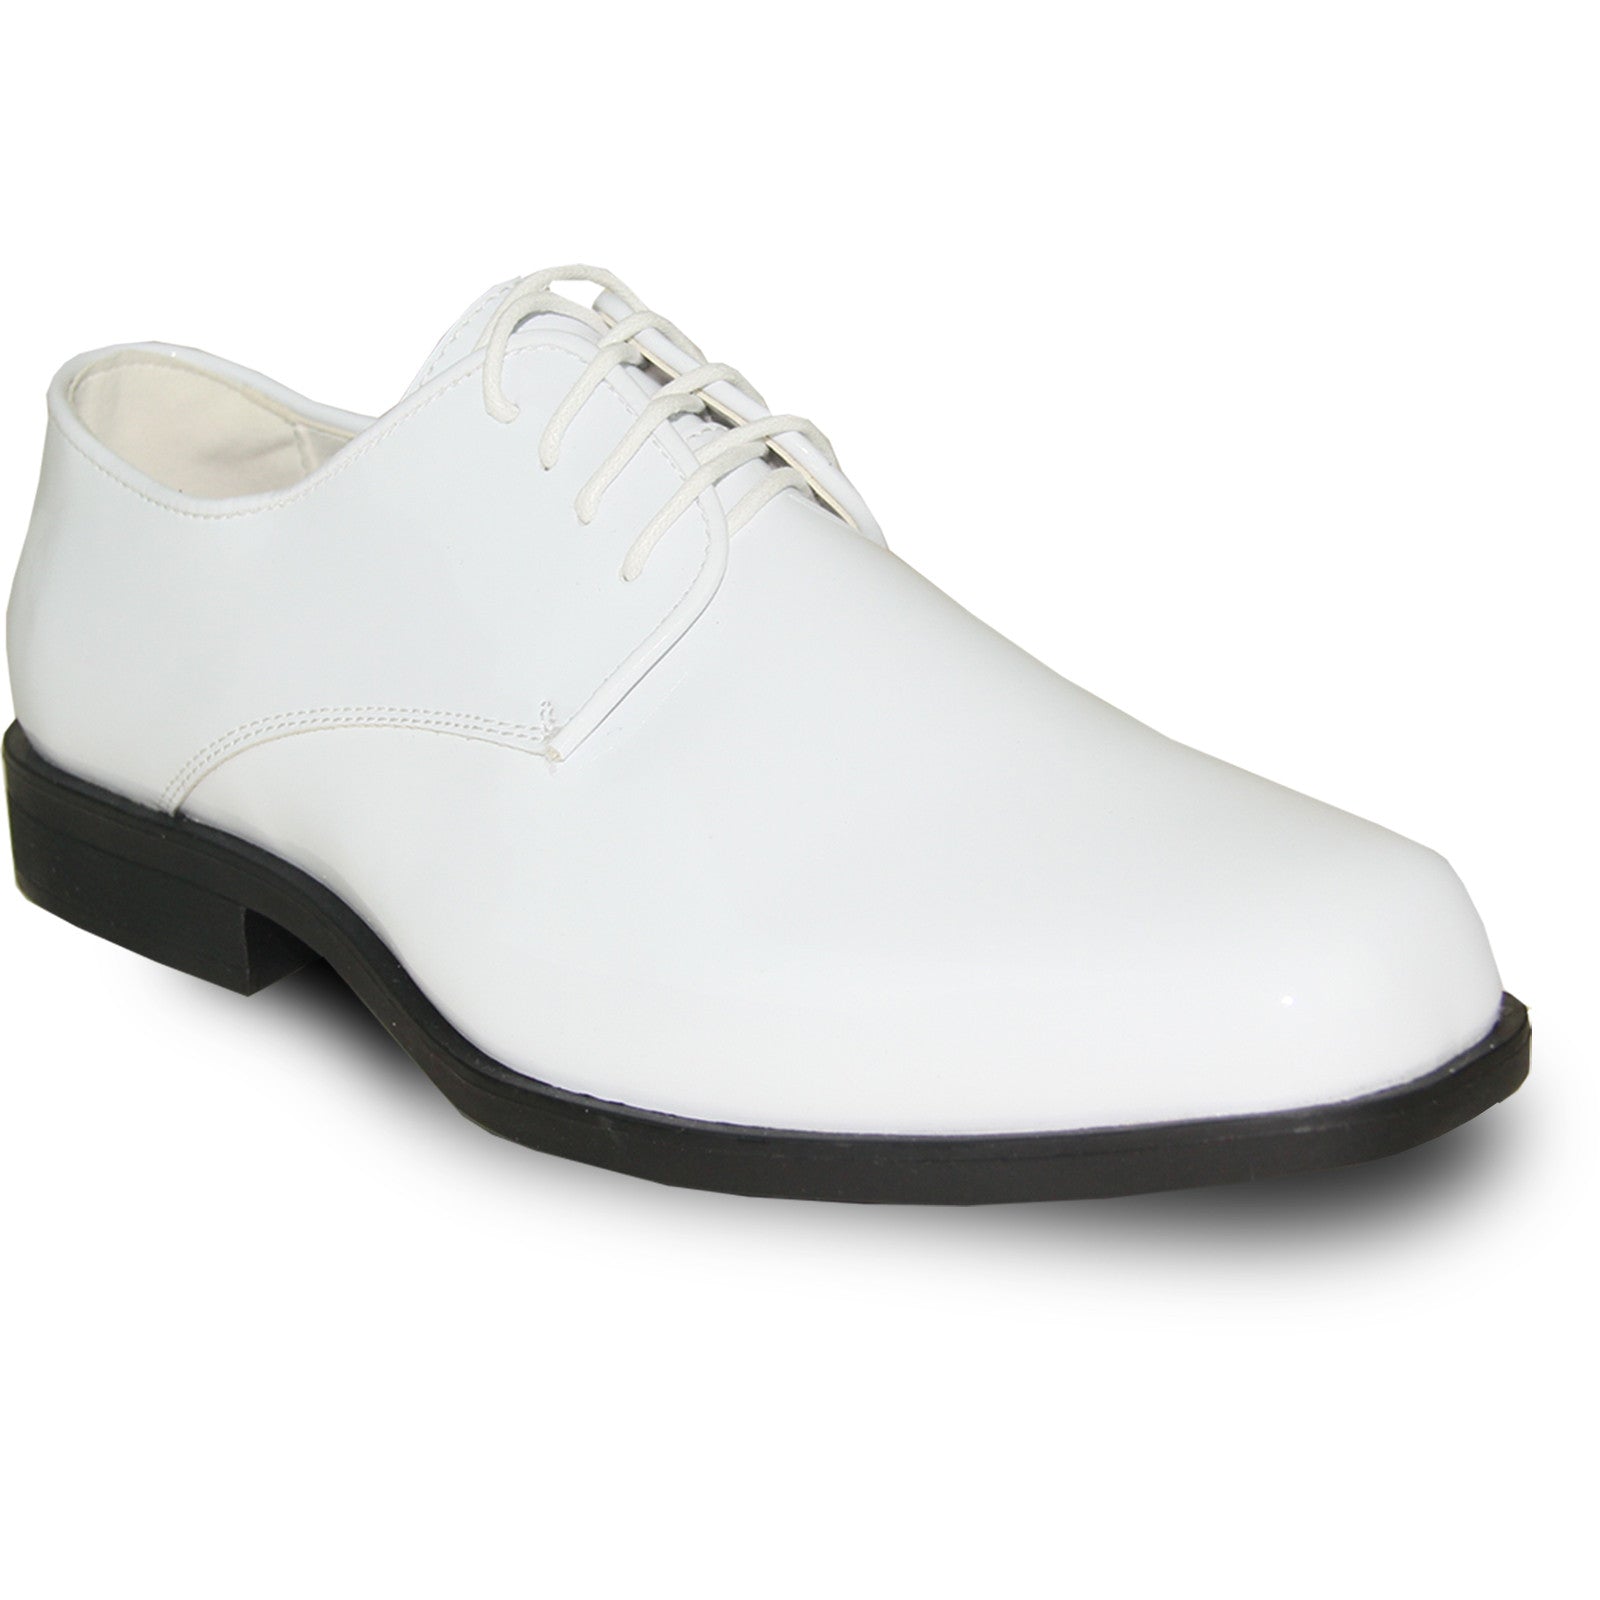 "White Patent Tuxedo Dress Shoe - Men's Classic Square Toe"